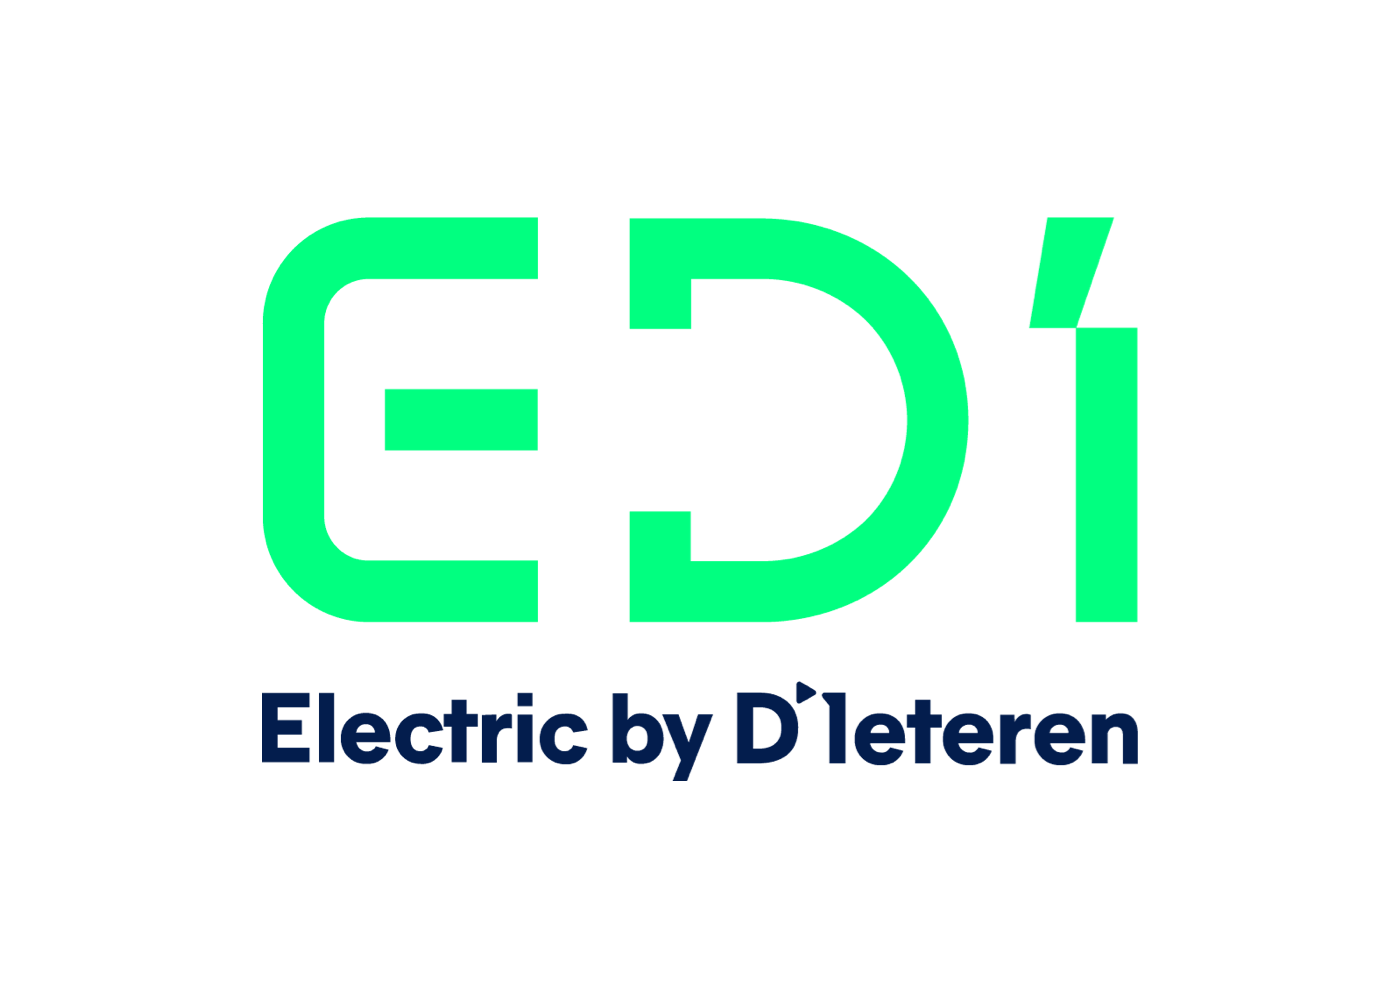 Bedrijfslogo Electric by D'Ieteren